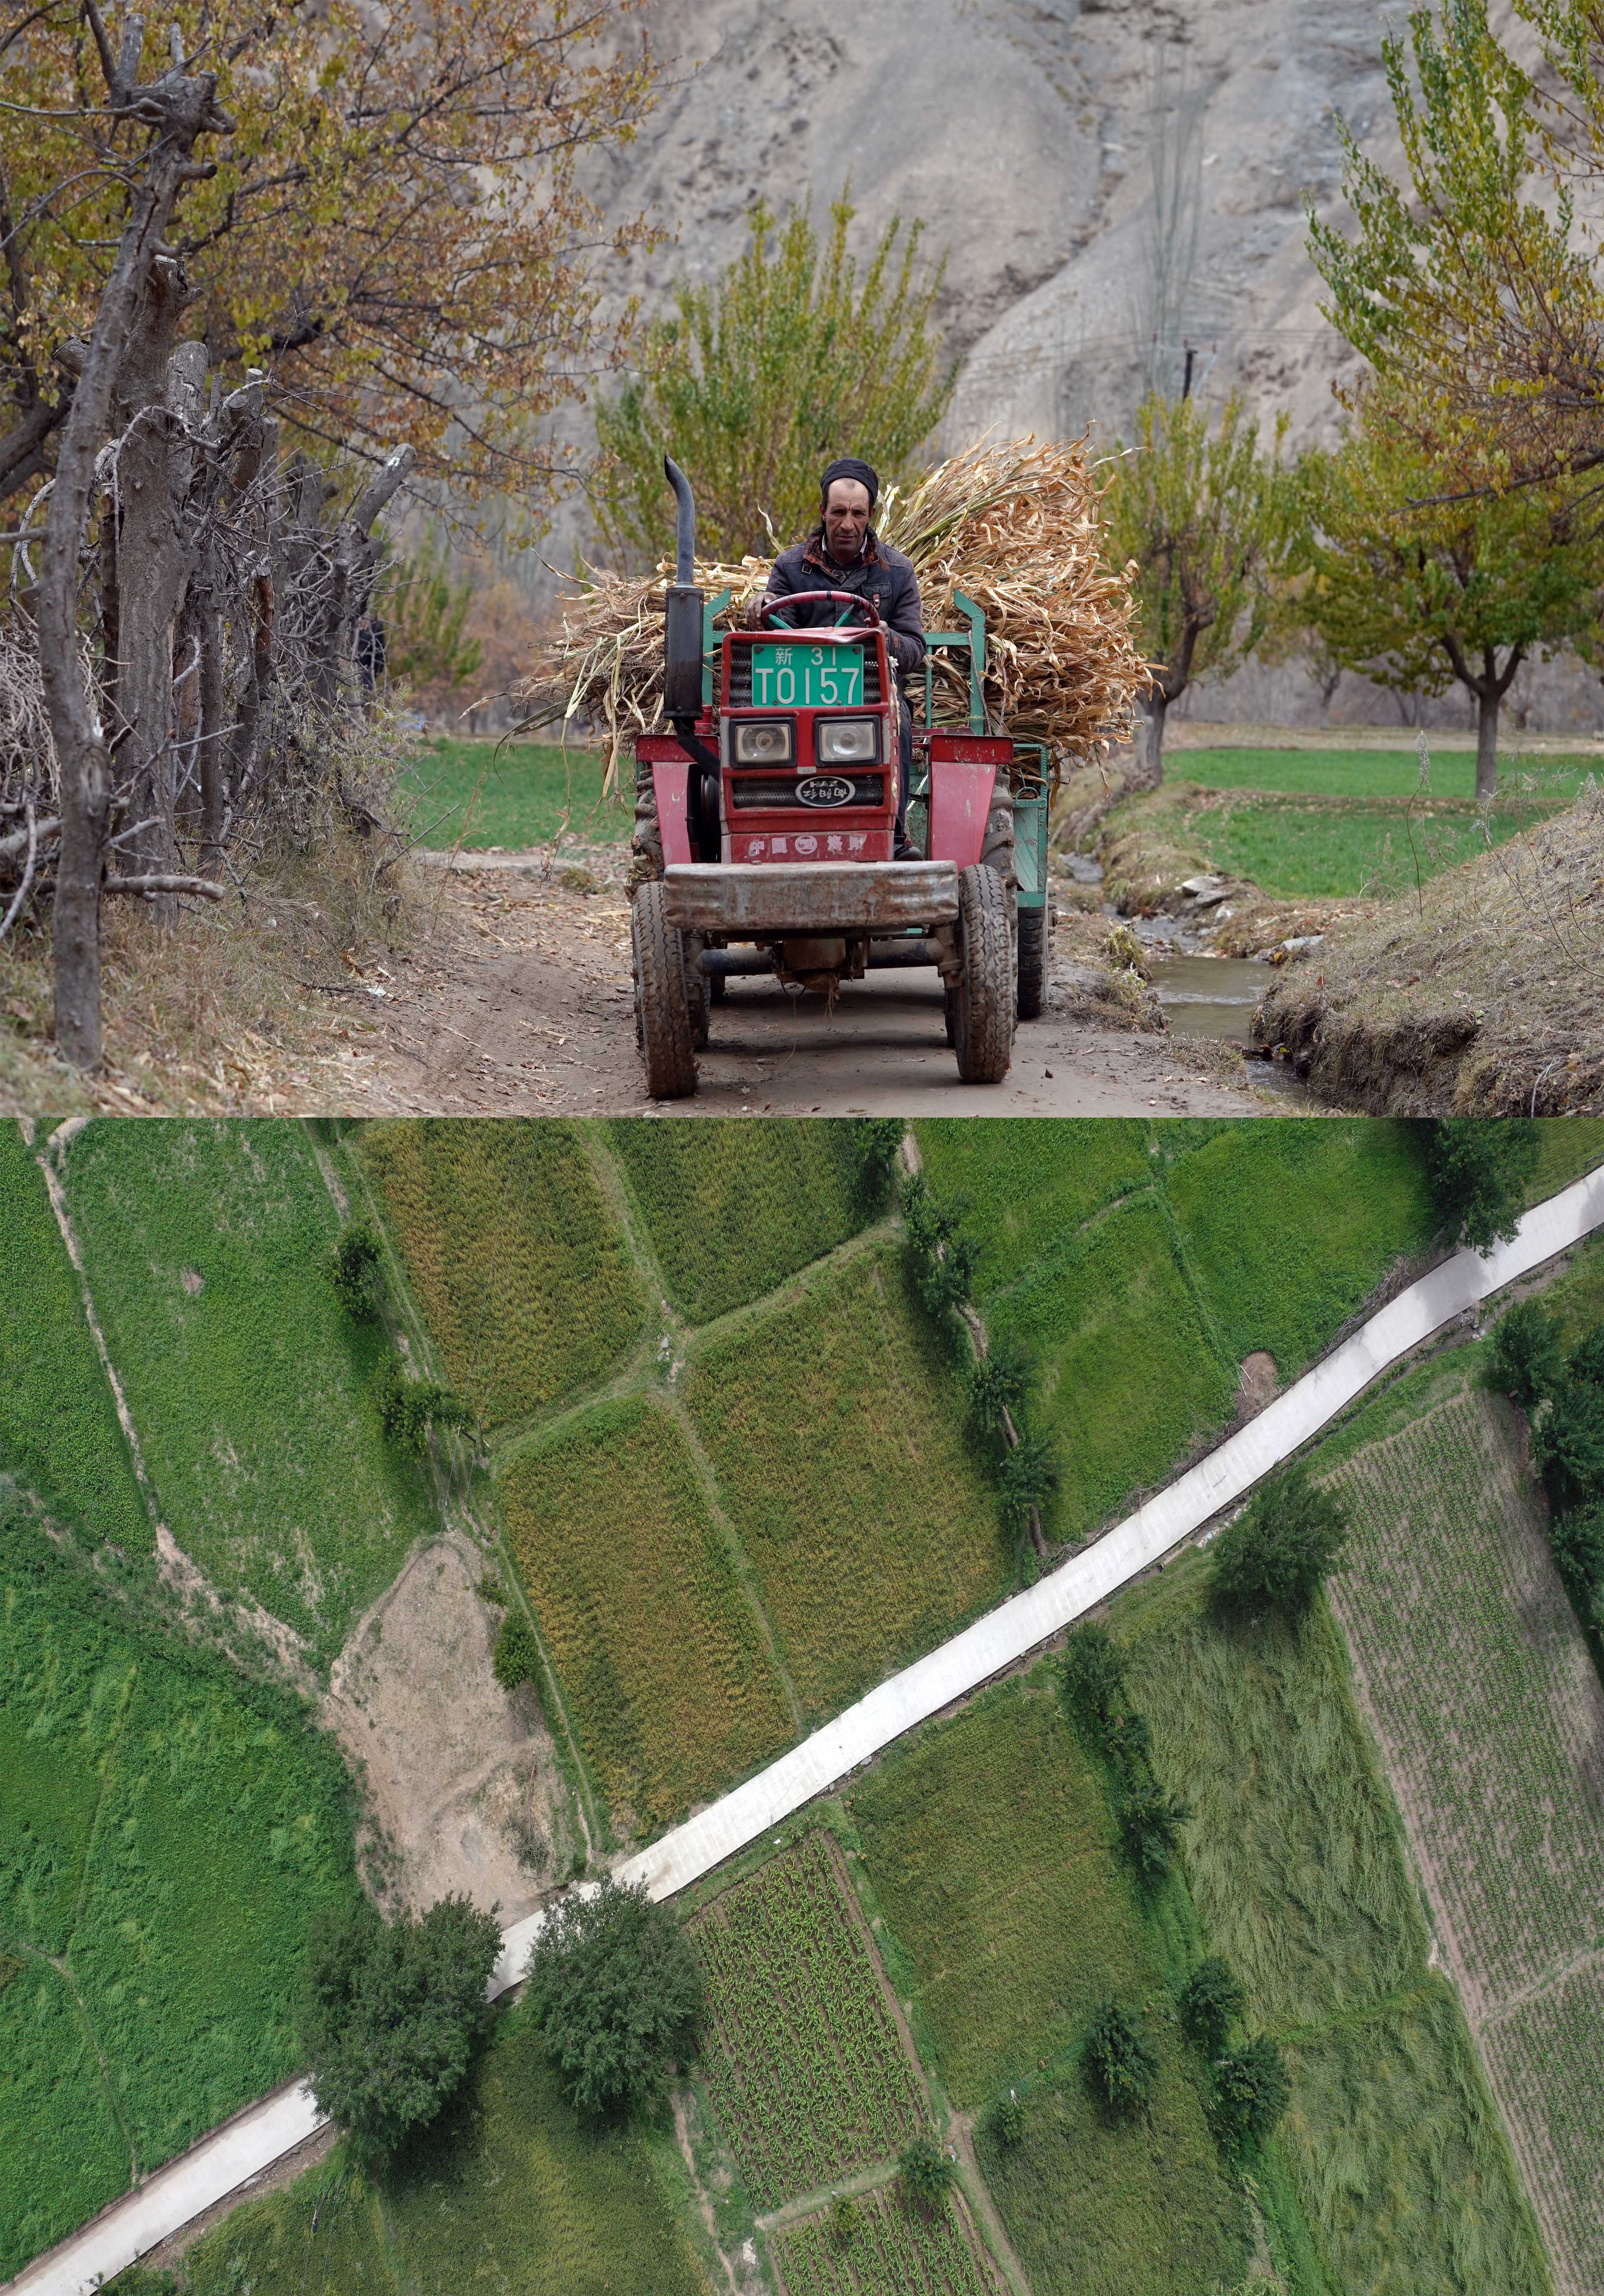 这是一张拼版照片:上图为新疆塔县大同乡库如克栏杆村一处还保留着的